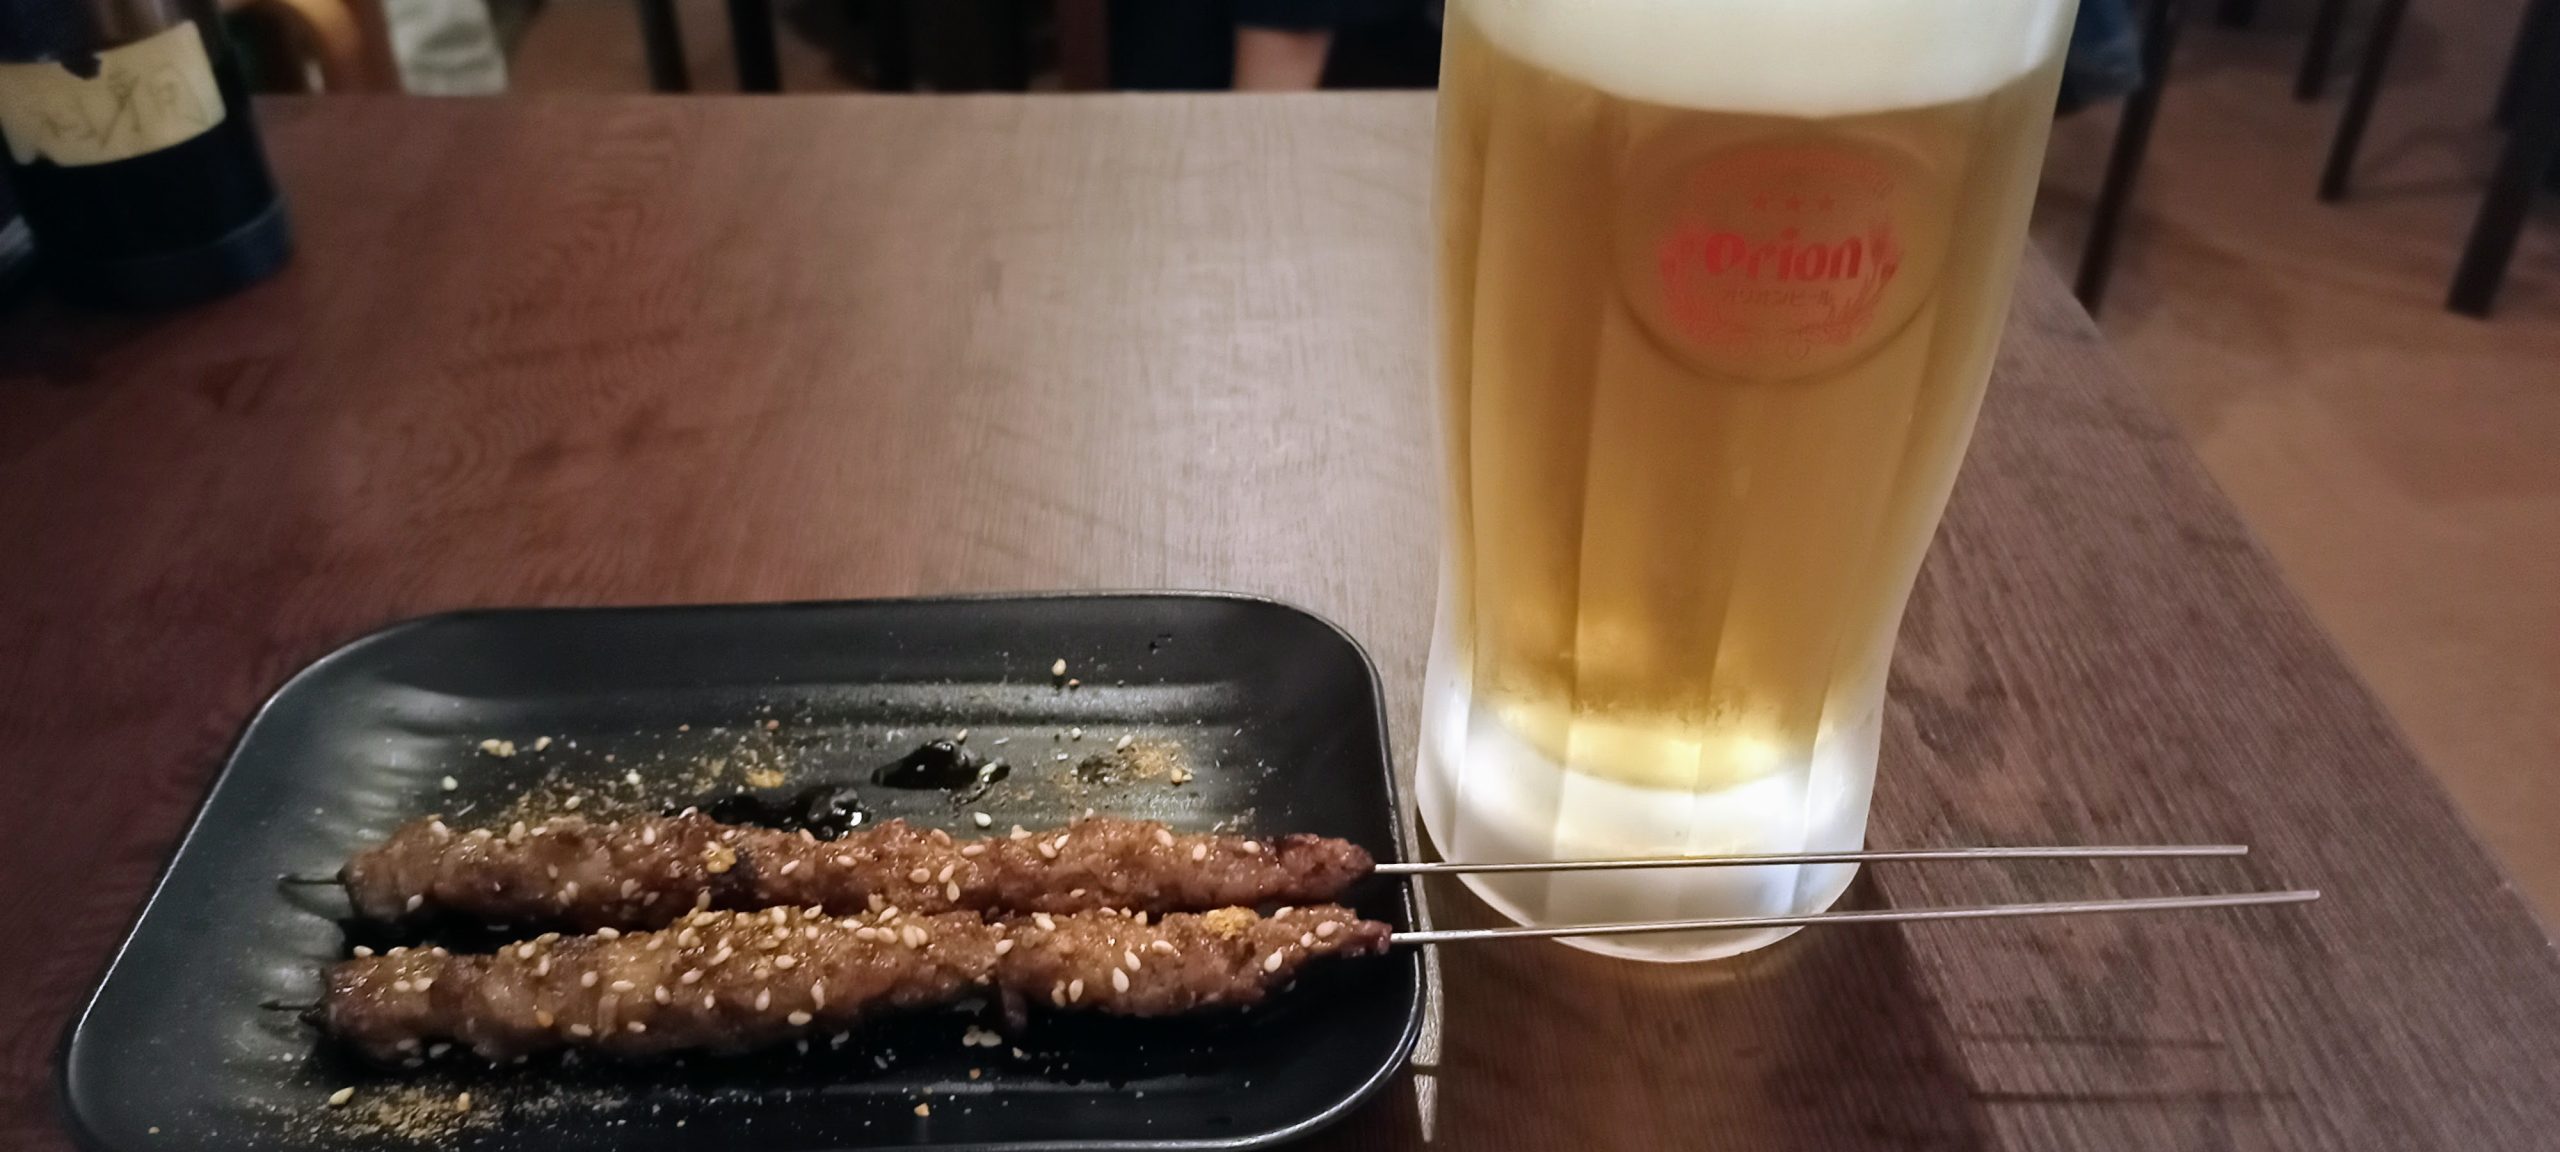 ラム肉串と3杯目のオリオン生ビール